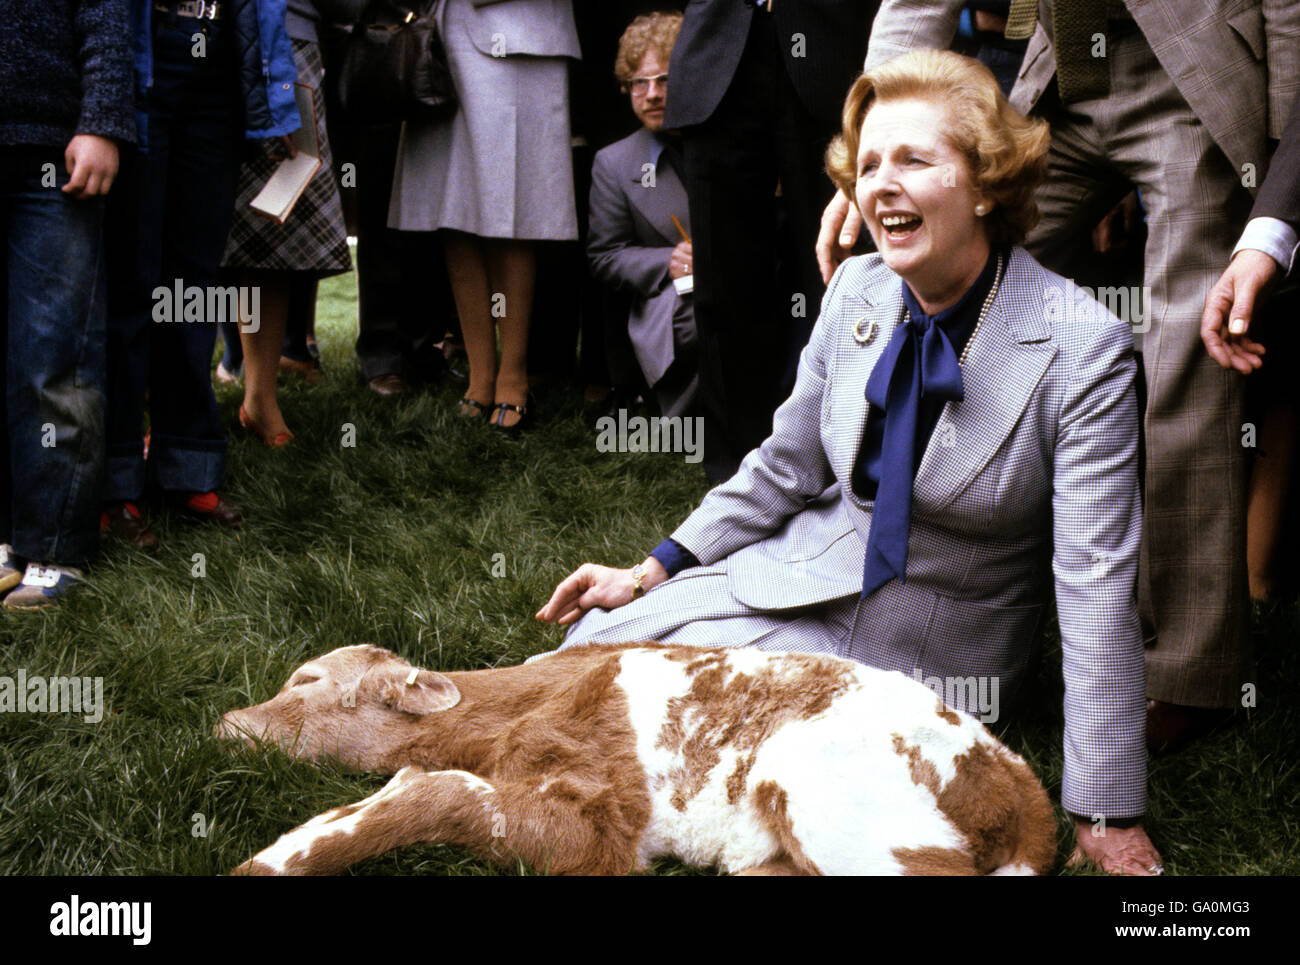 Margaret Thatcher begrüßt Maggie, ein verschlafenes Charolais-Kalb, das erst 12 Stunden alt ist, auf der Willisham Farm, Ipswich, während der Wahltour des konservativen Führers durch East Anglia. Stockfoto